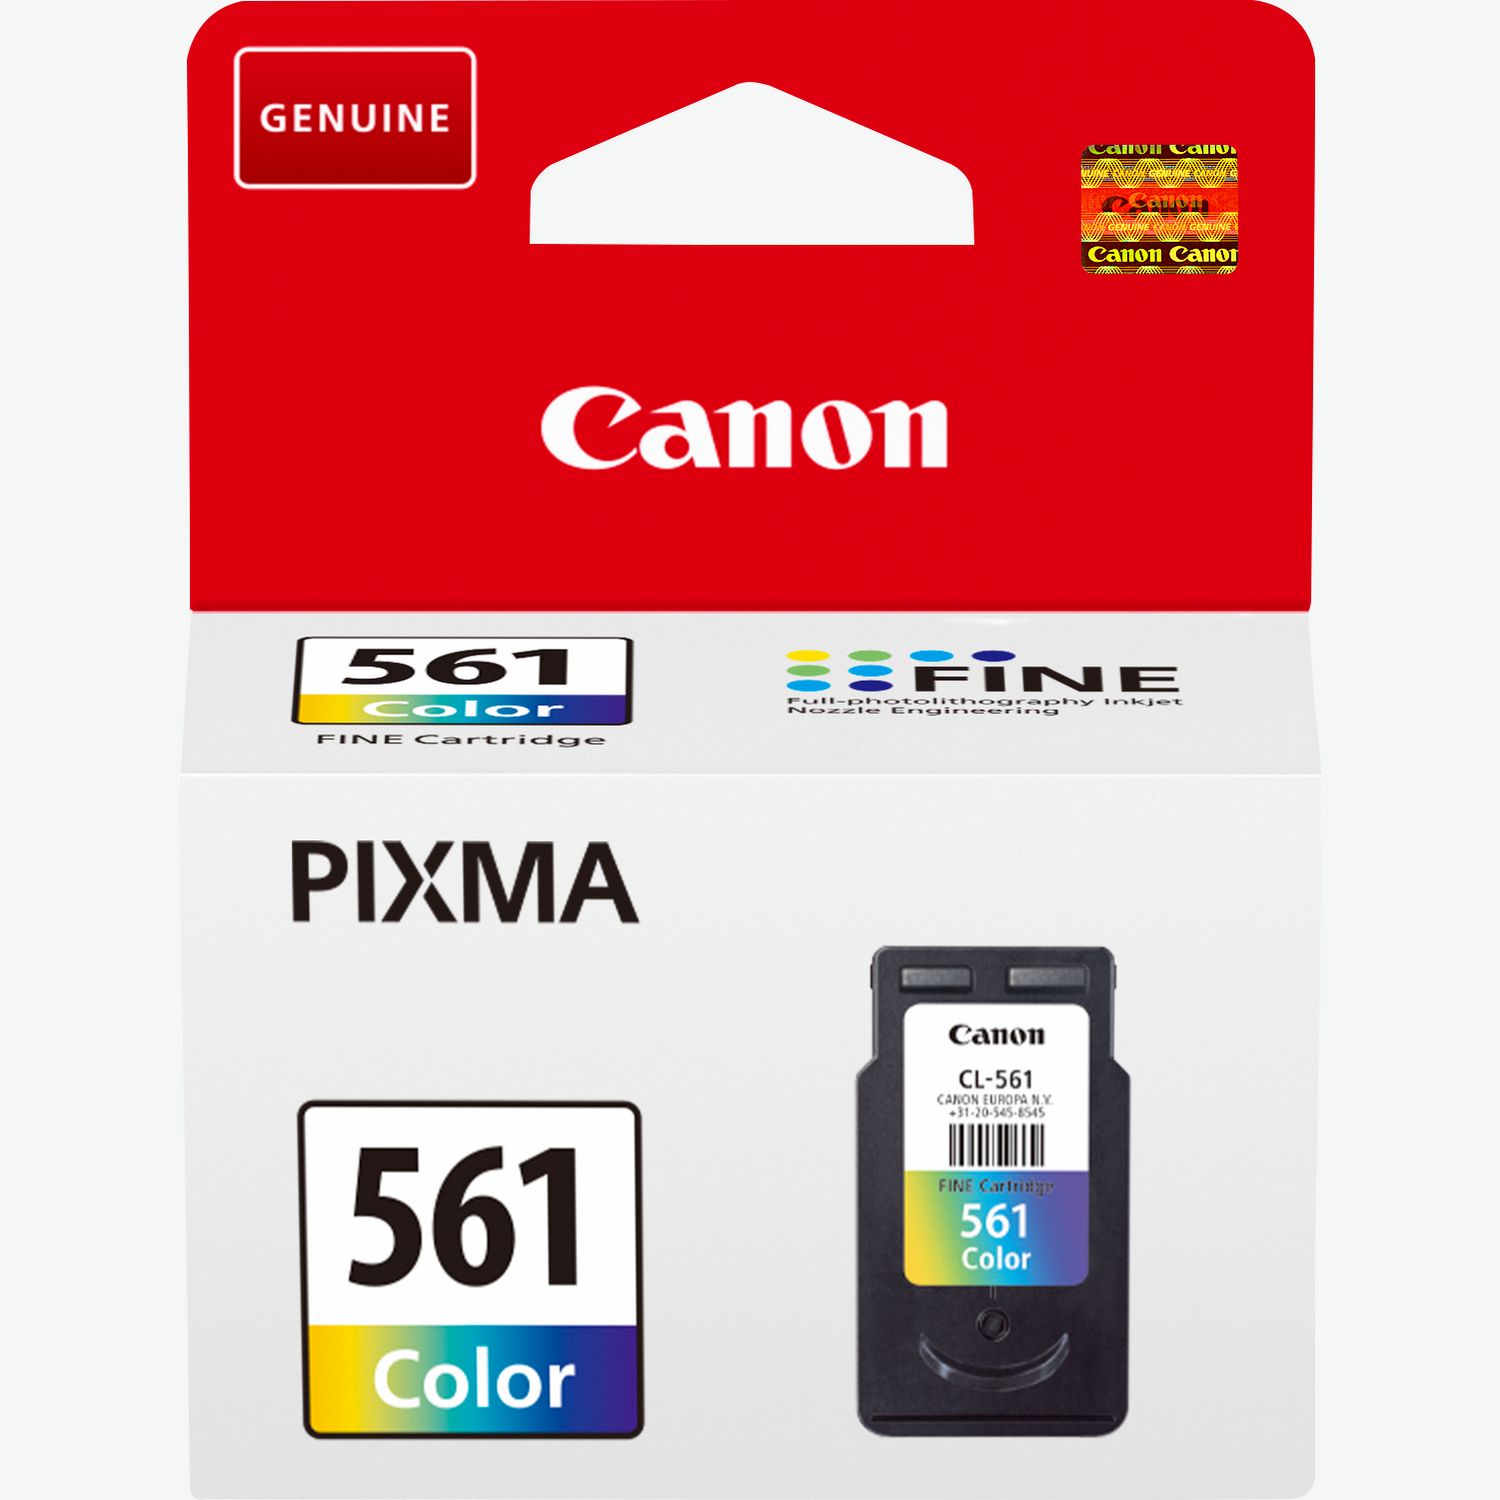 Canon Pixma TS5350 Photo Printer Green Silver